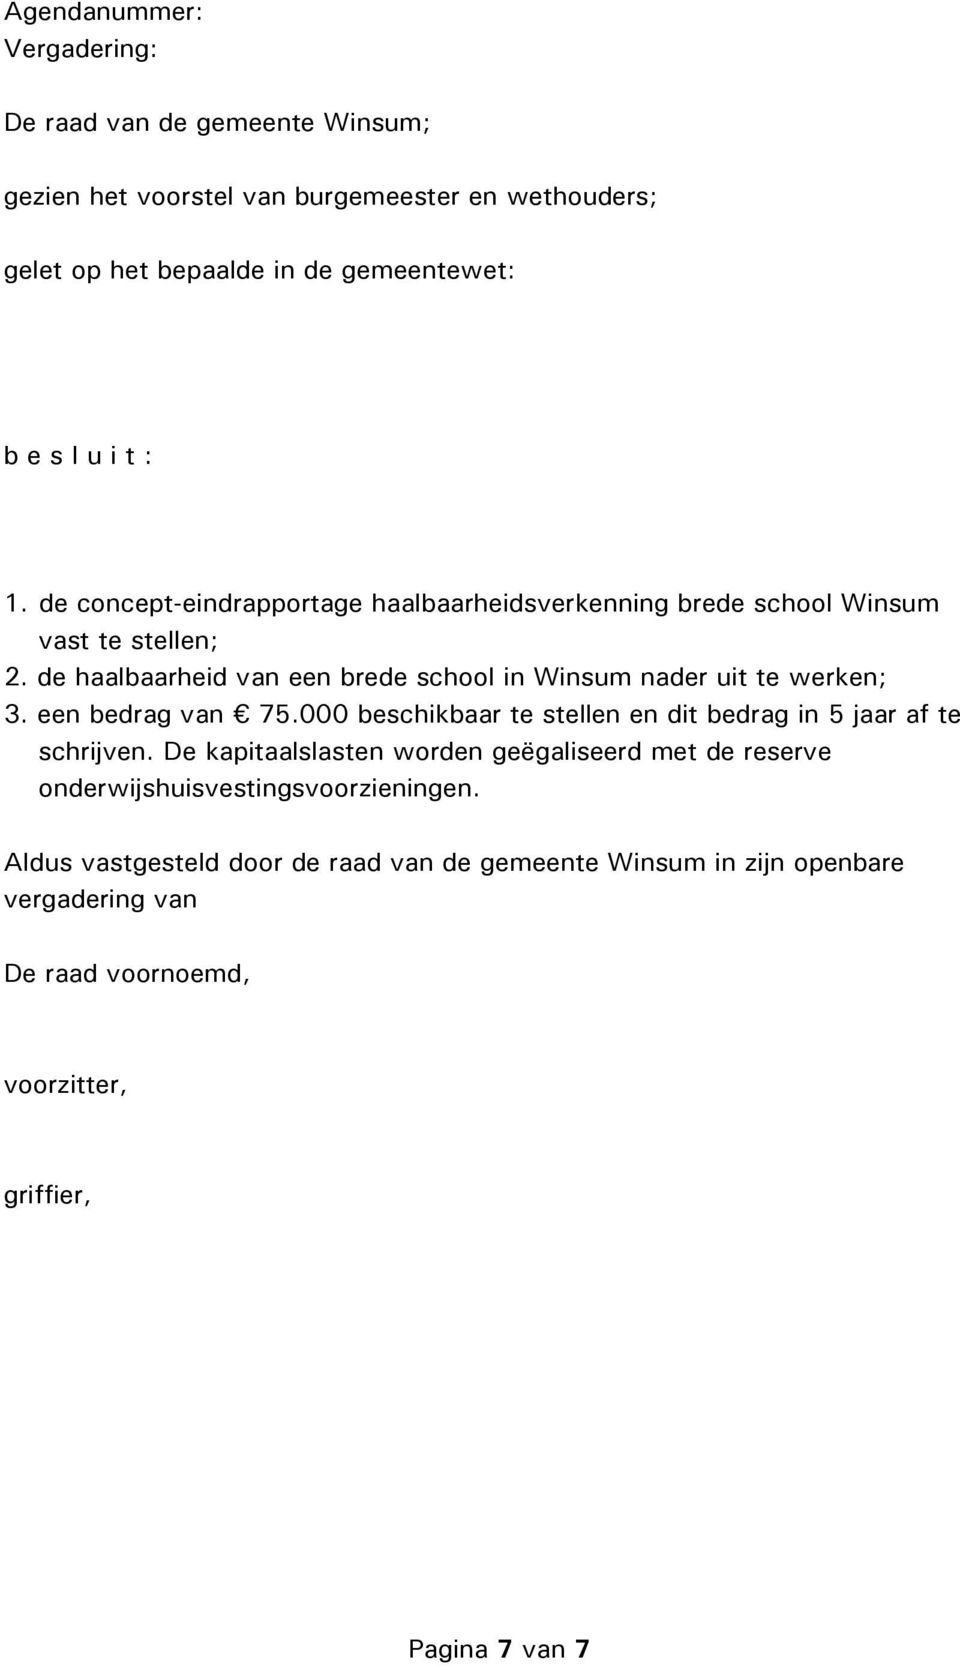 de haalbaarheid van een brede school in Winsum nader uit te werken; 3. een bedrag van 75.000 beschikbaar te stellen en dit bedrag in 5 jaar af te schrijven.